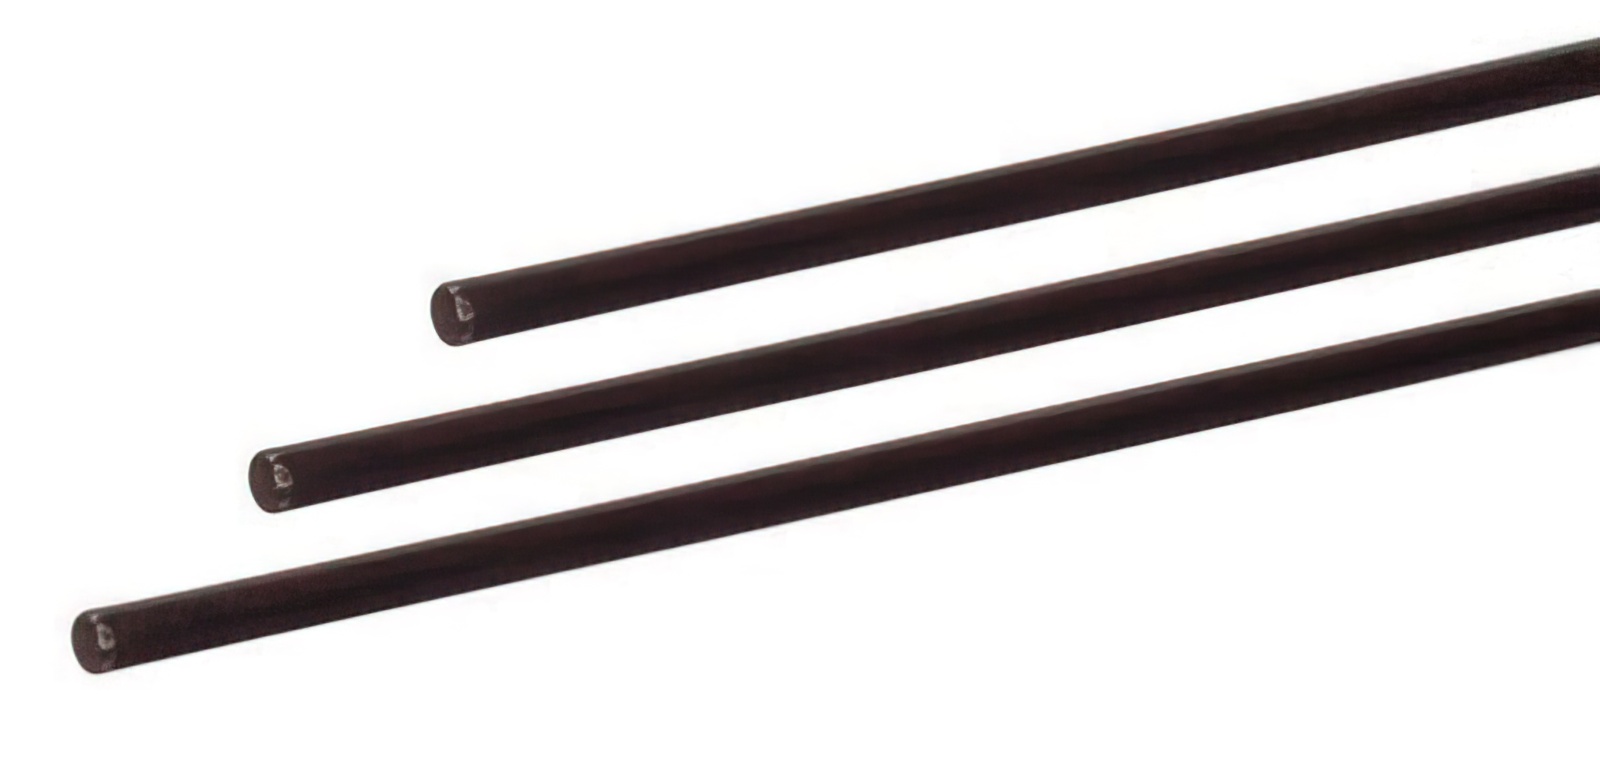 5 Stück - Gfk-Vollstab (Fiberglasstab/Glasfaserstab) 6  mm 175 cm schwarz für Drachen- und Modellbau Basteln Montagen Messebau Industrie Haushalt